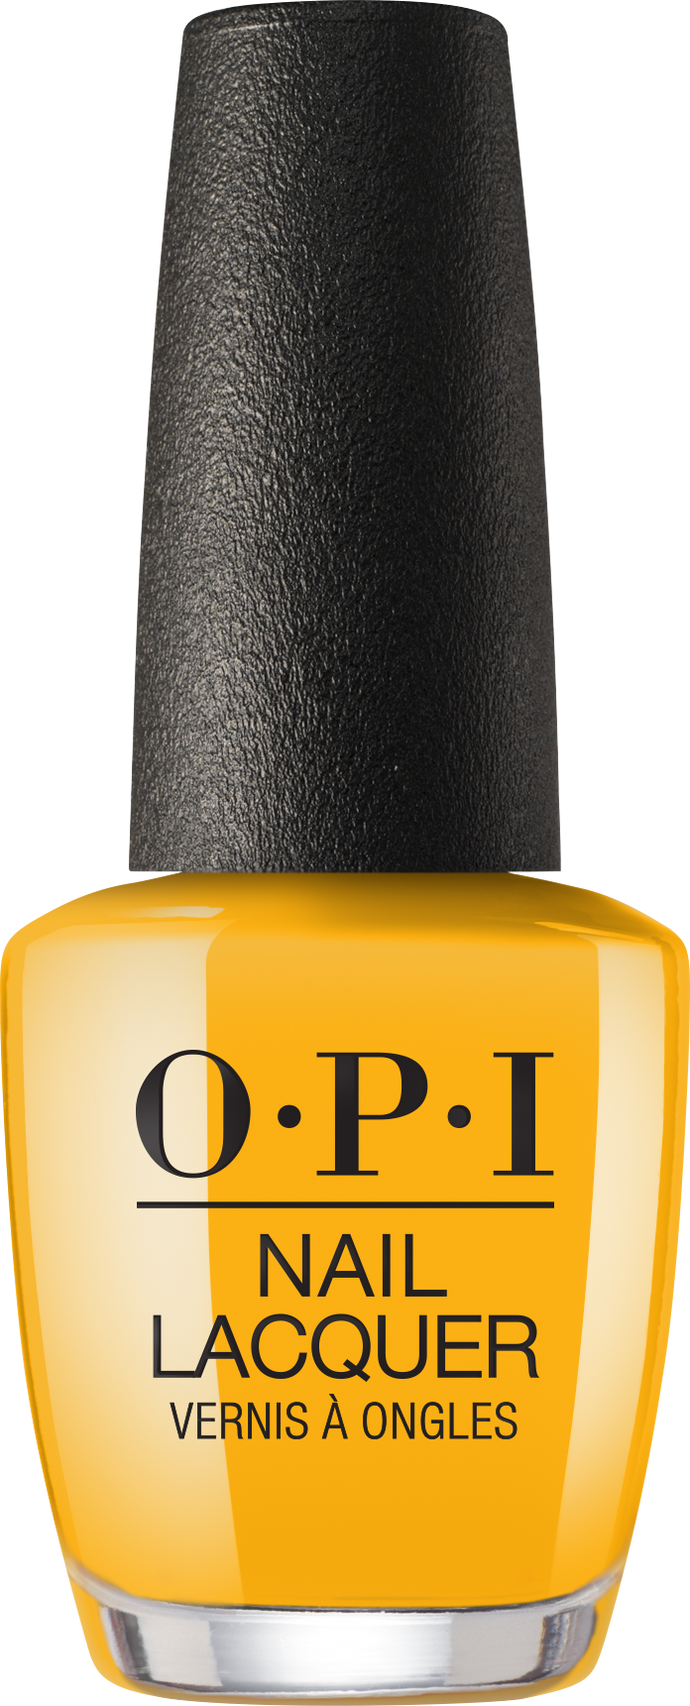 OPI OPI Nail Lacquer - Sun, Sea, and Sand in My Pants 0.5 oz - #NLL23 - Sleek Nail